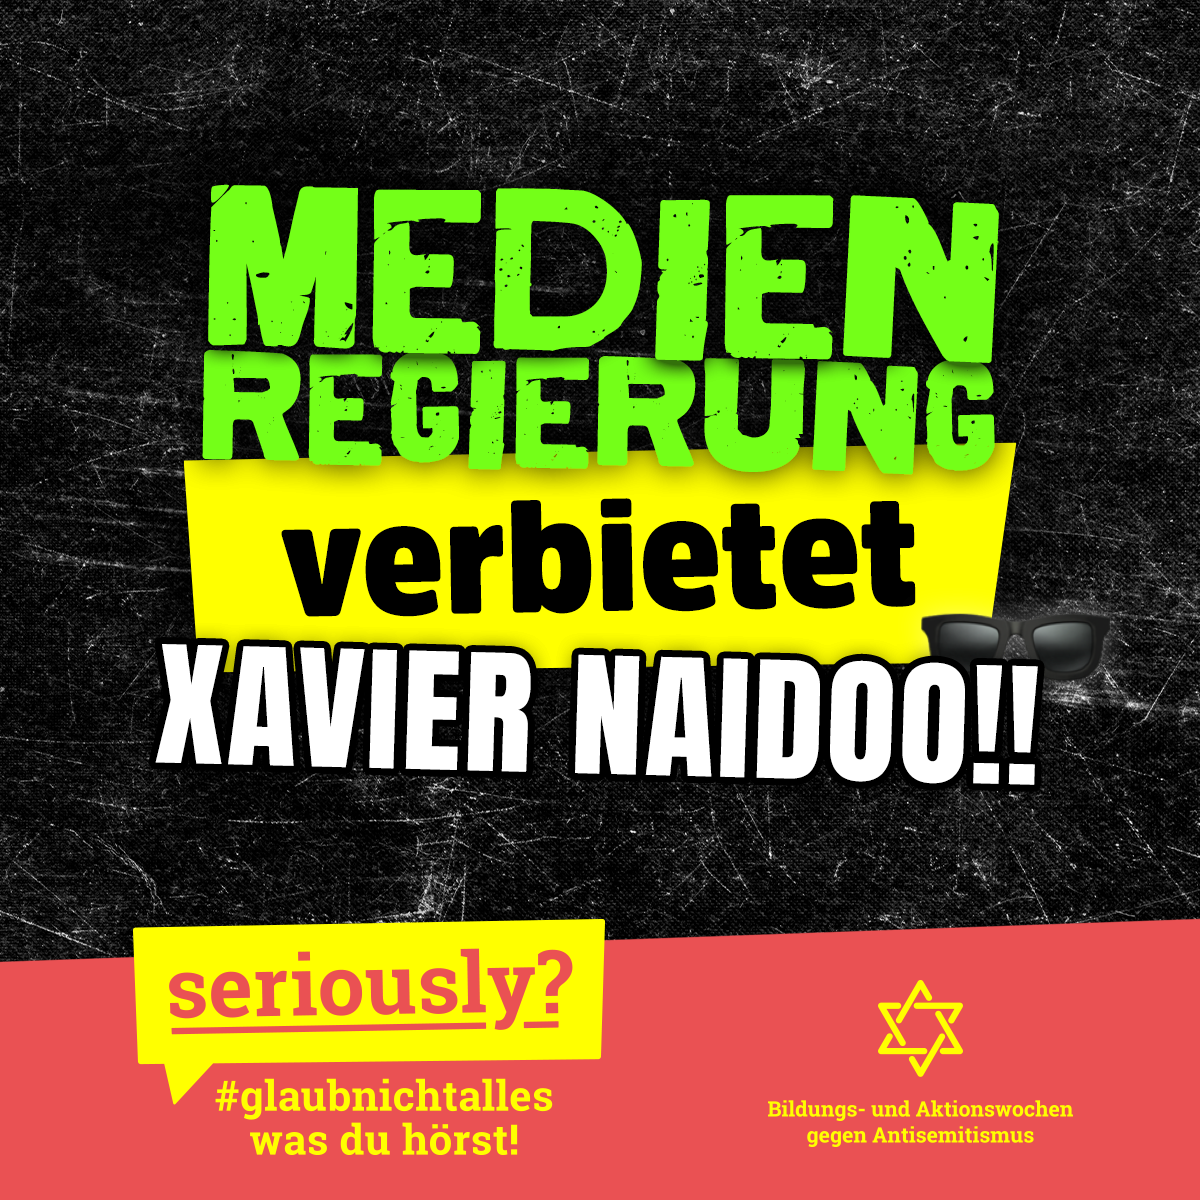 Text: "Medienregierung verbietet Xavier Naidoo!!" "Seriously? #glaubnichtalles was du hörst! Aktionswochen gegen Antisemitismus